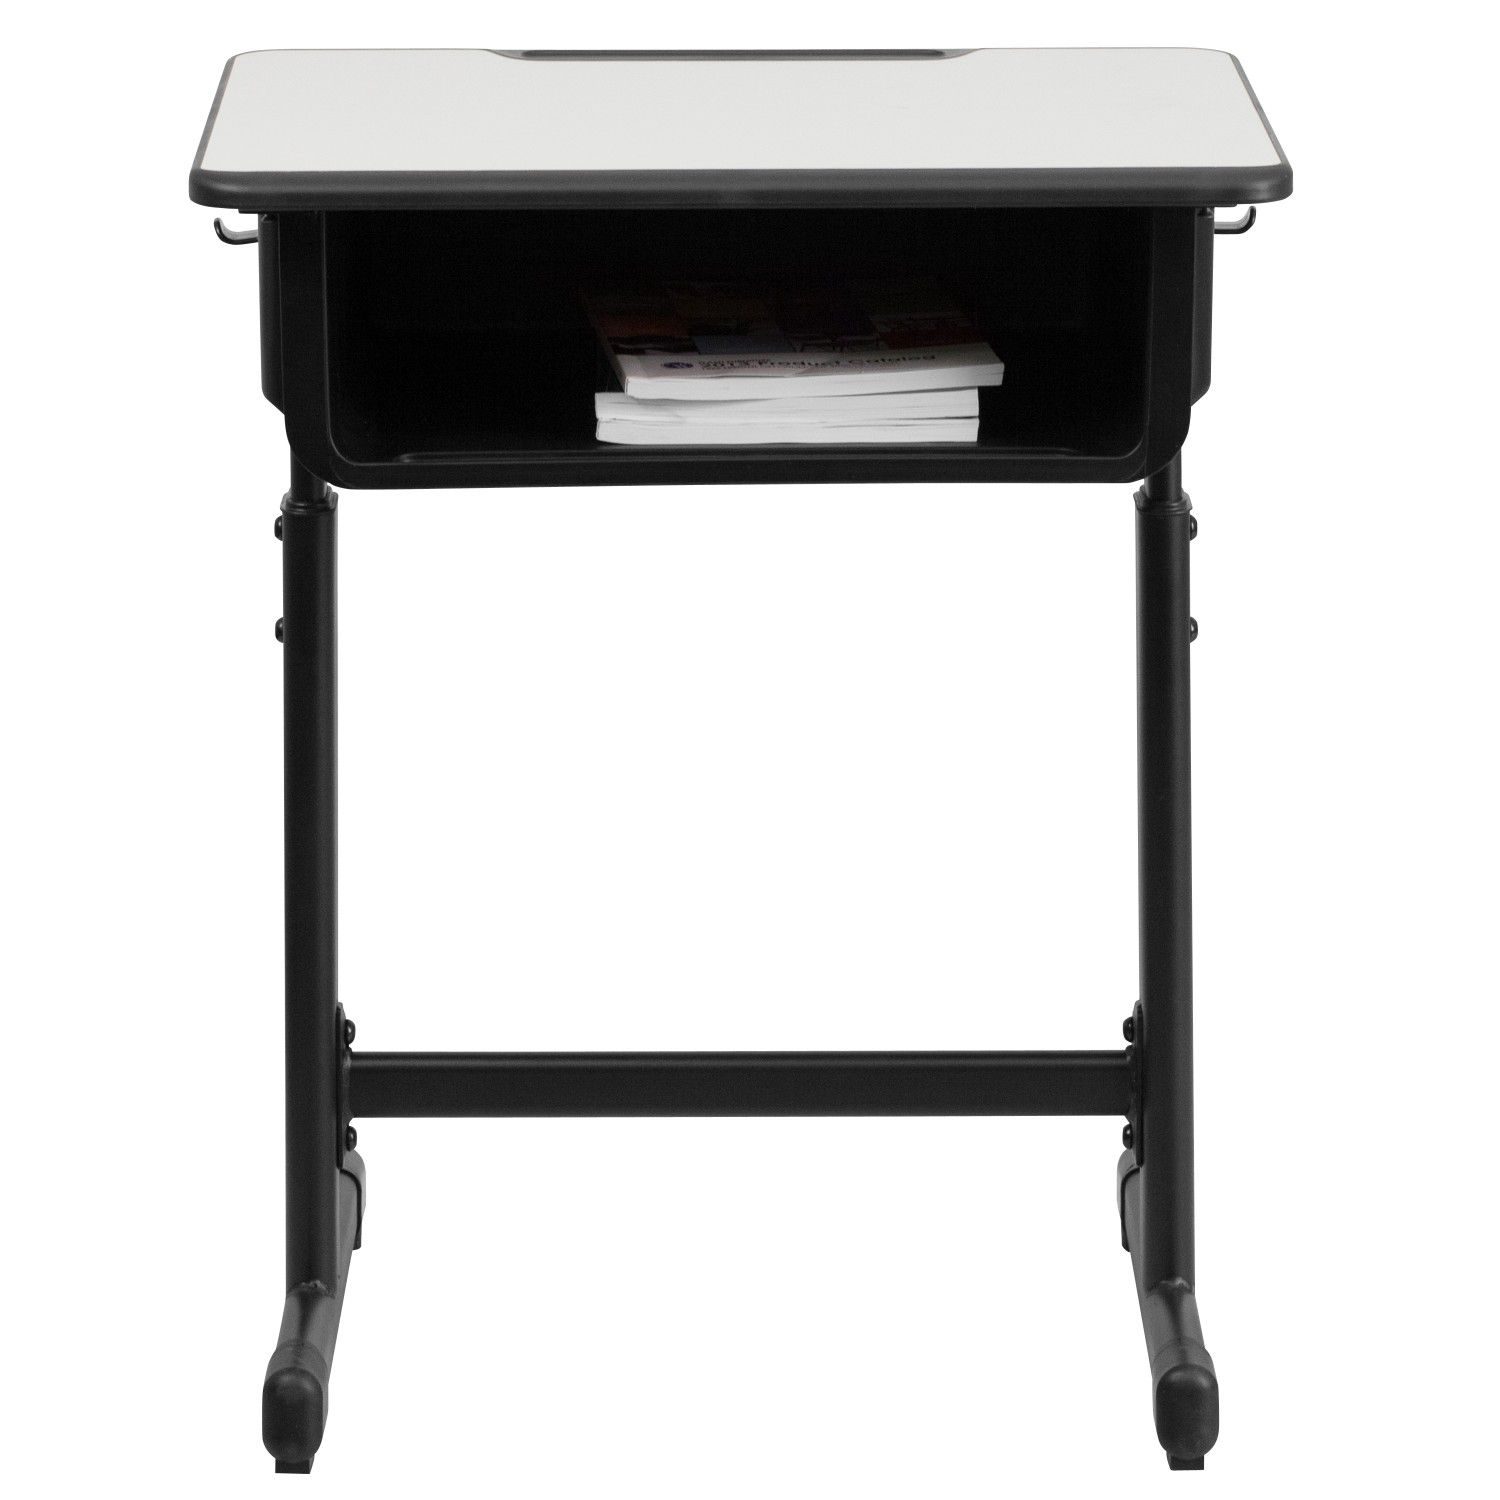 Desk with Grey Top and Adjustable Height Black Pedestal Frame